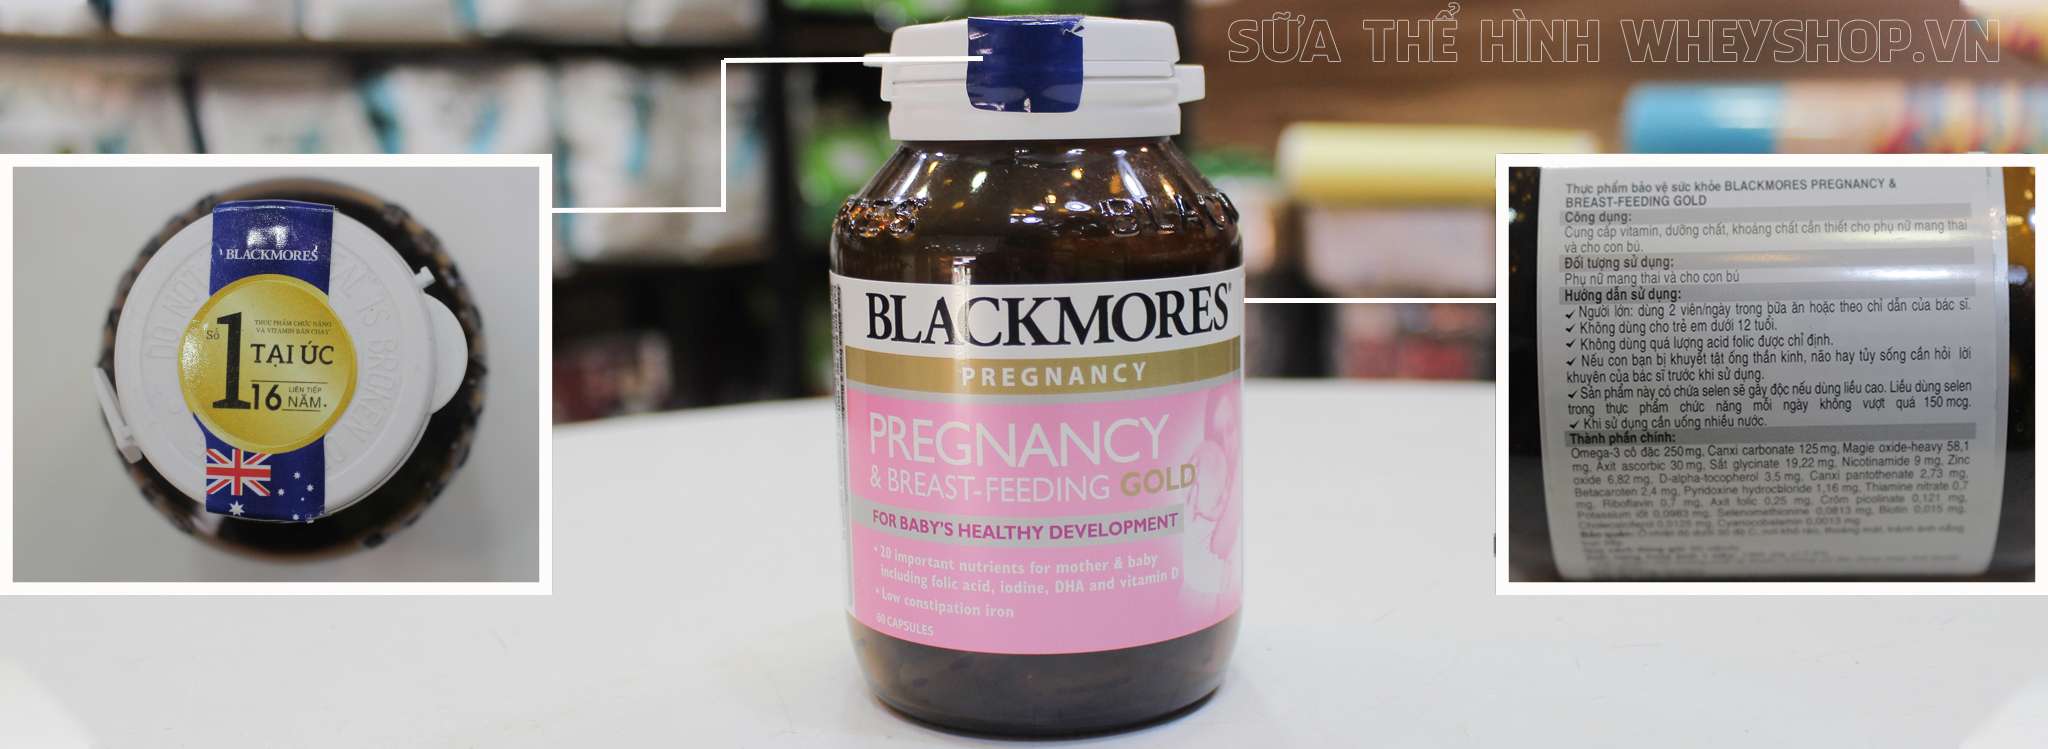 Blackmores Pregnancy and Breast Feeding Gold dành cho phụ nữ có thai hỗ trợ sự vận chuyển oxi đến các mô phát triển trí não, thính lực, thị lực và hệ thần kinh khỏe mạnh